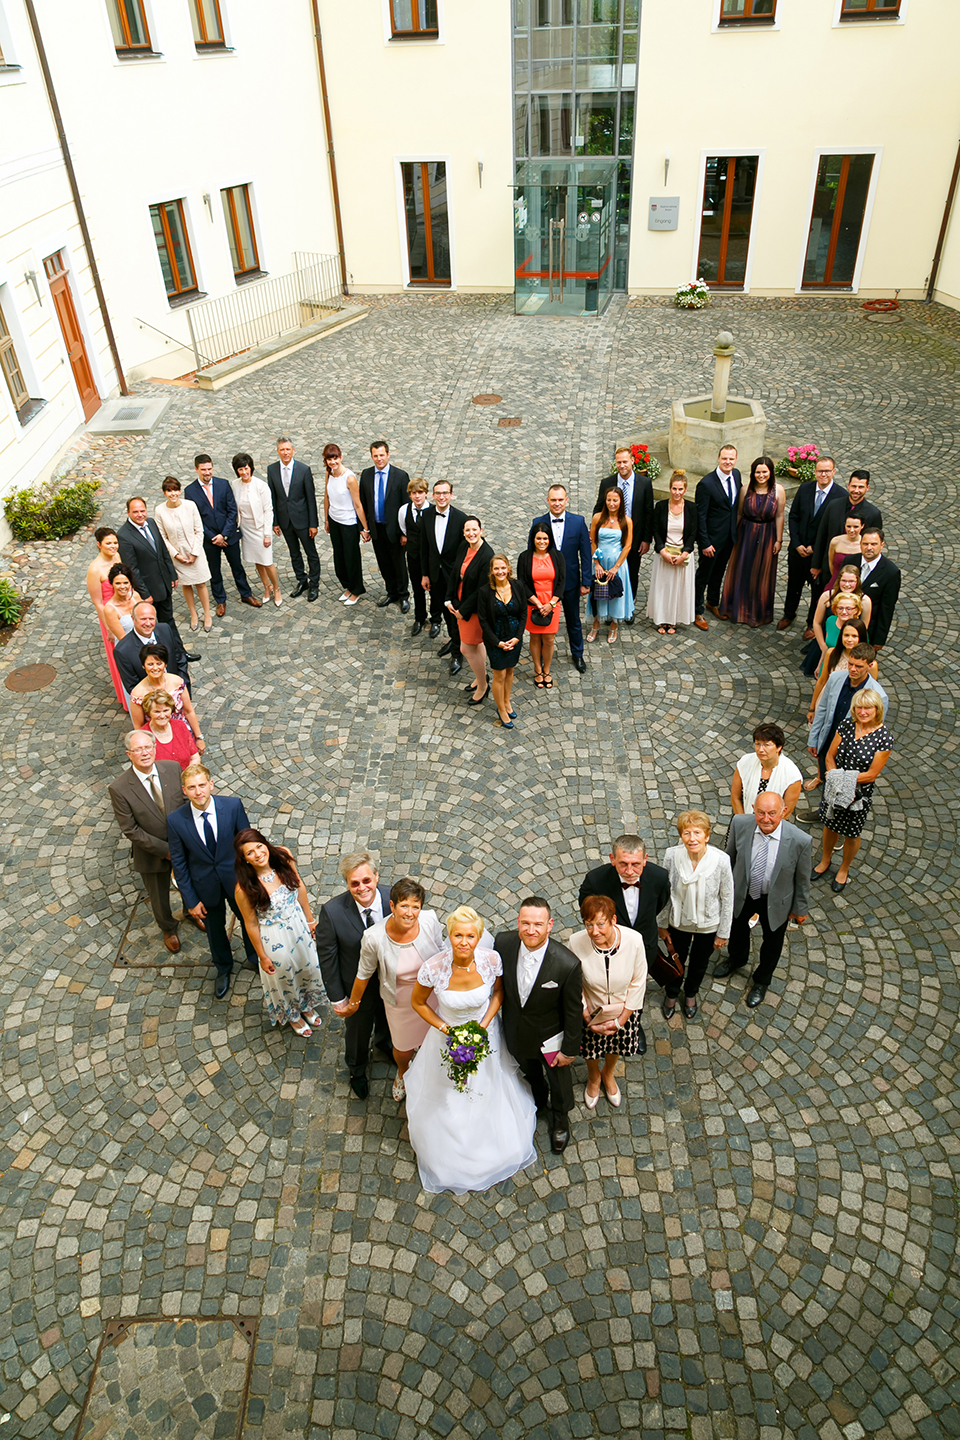 Heiraten auf Schloß Jessen - Fotostudio Ender